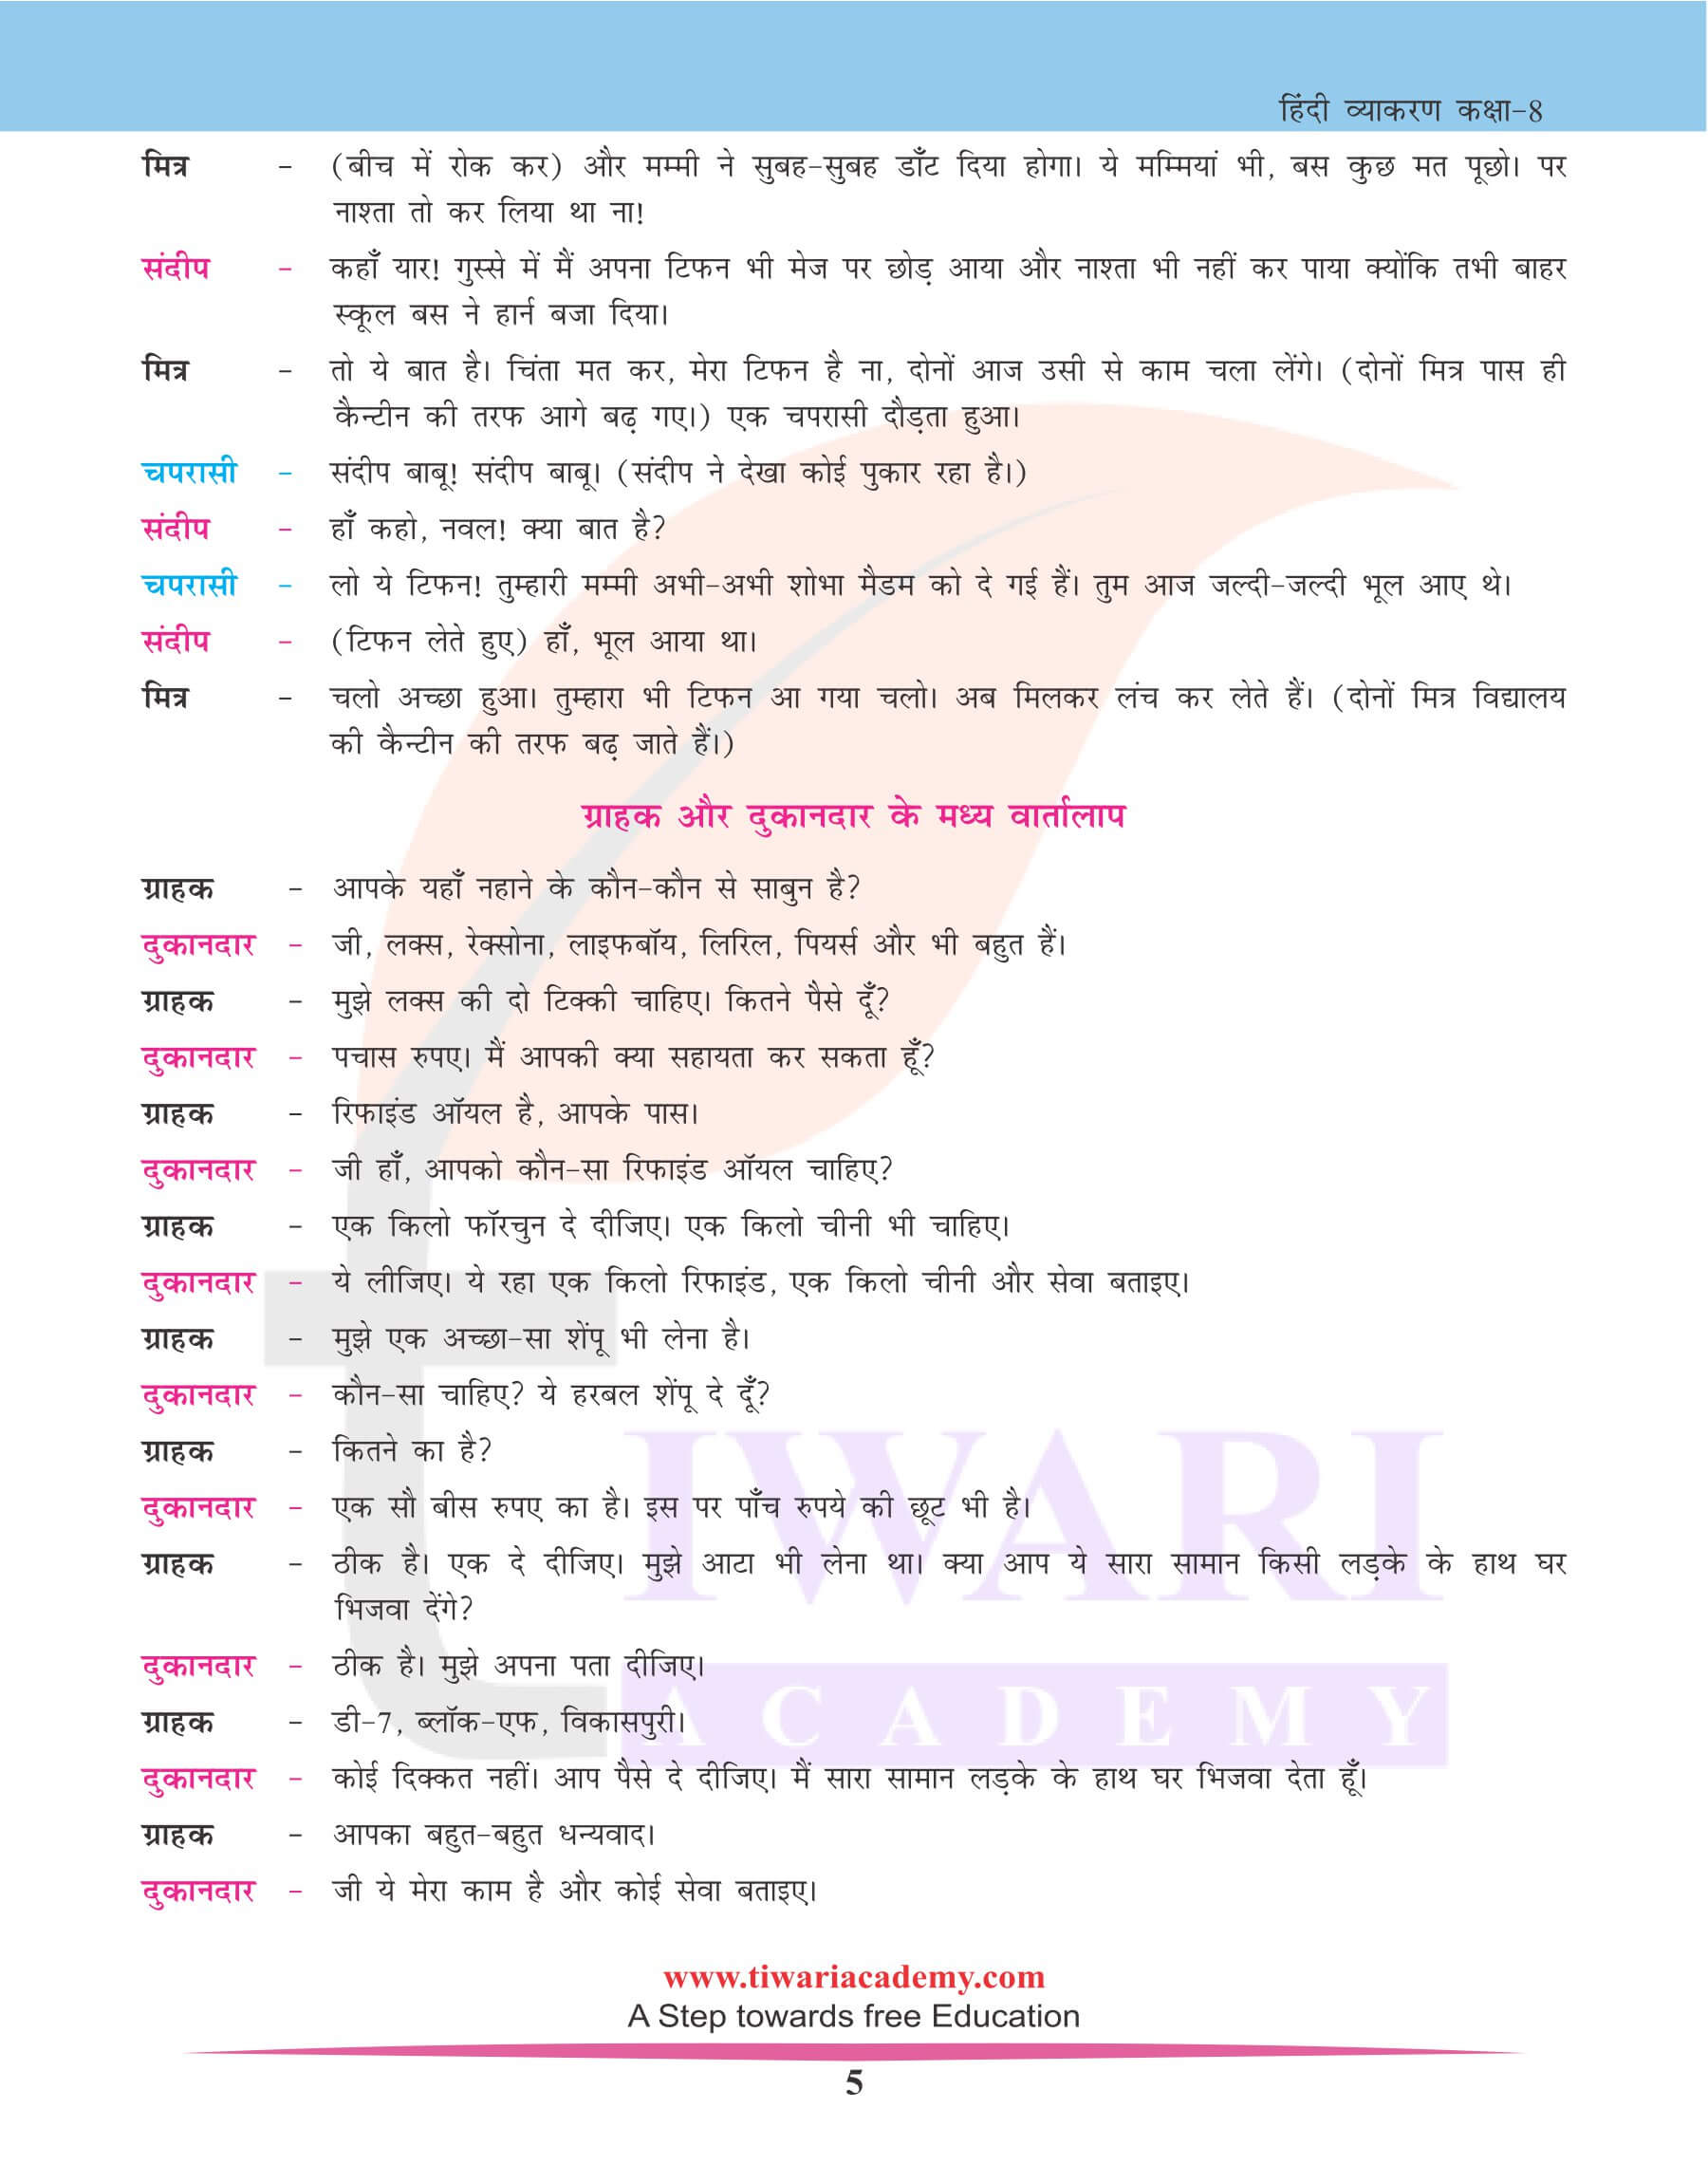 कक्षा 8 हिंदी व्याकरण में मौखिक अभिव्यक्ति के प्रश्न उत्तर